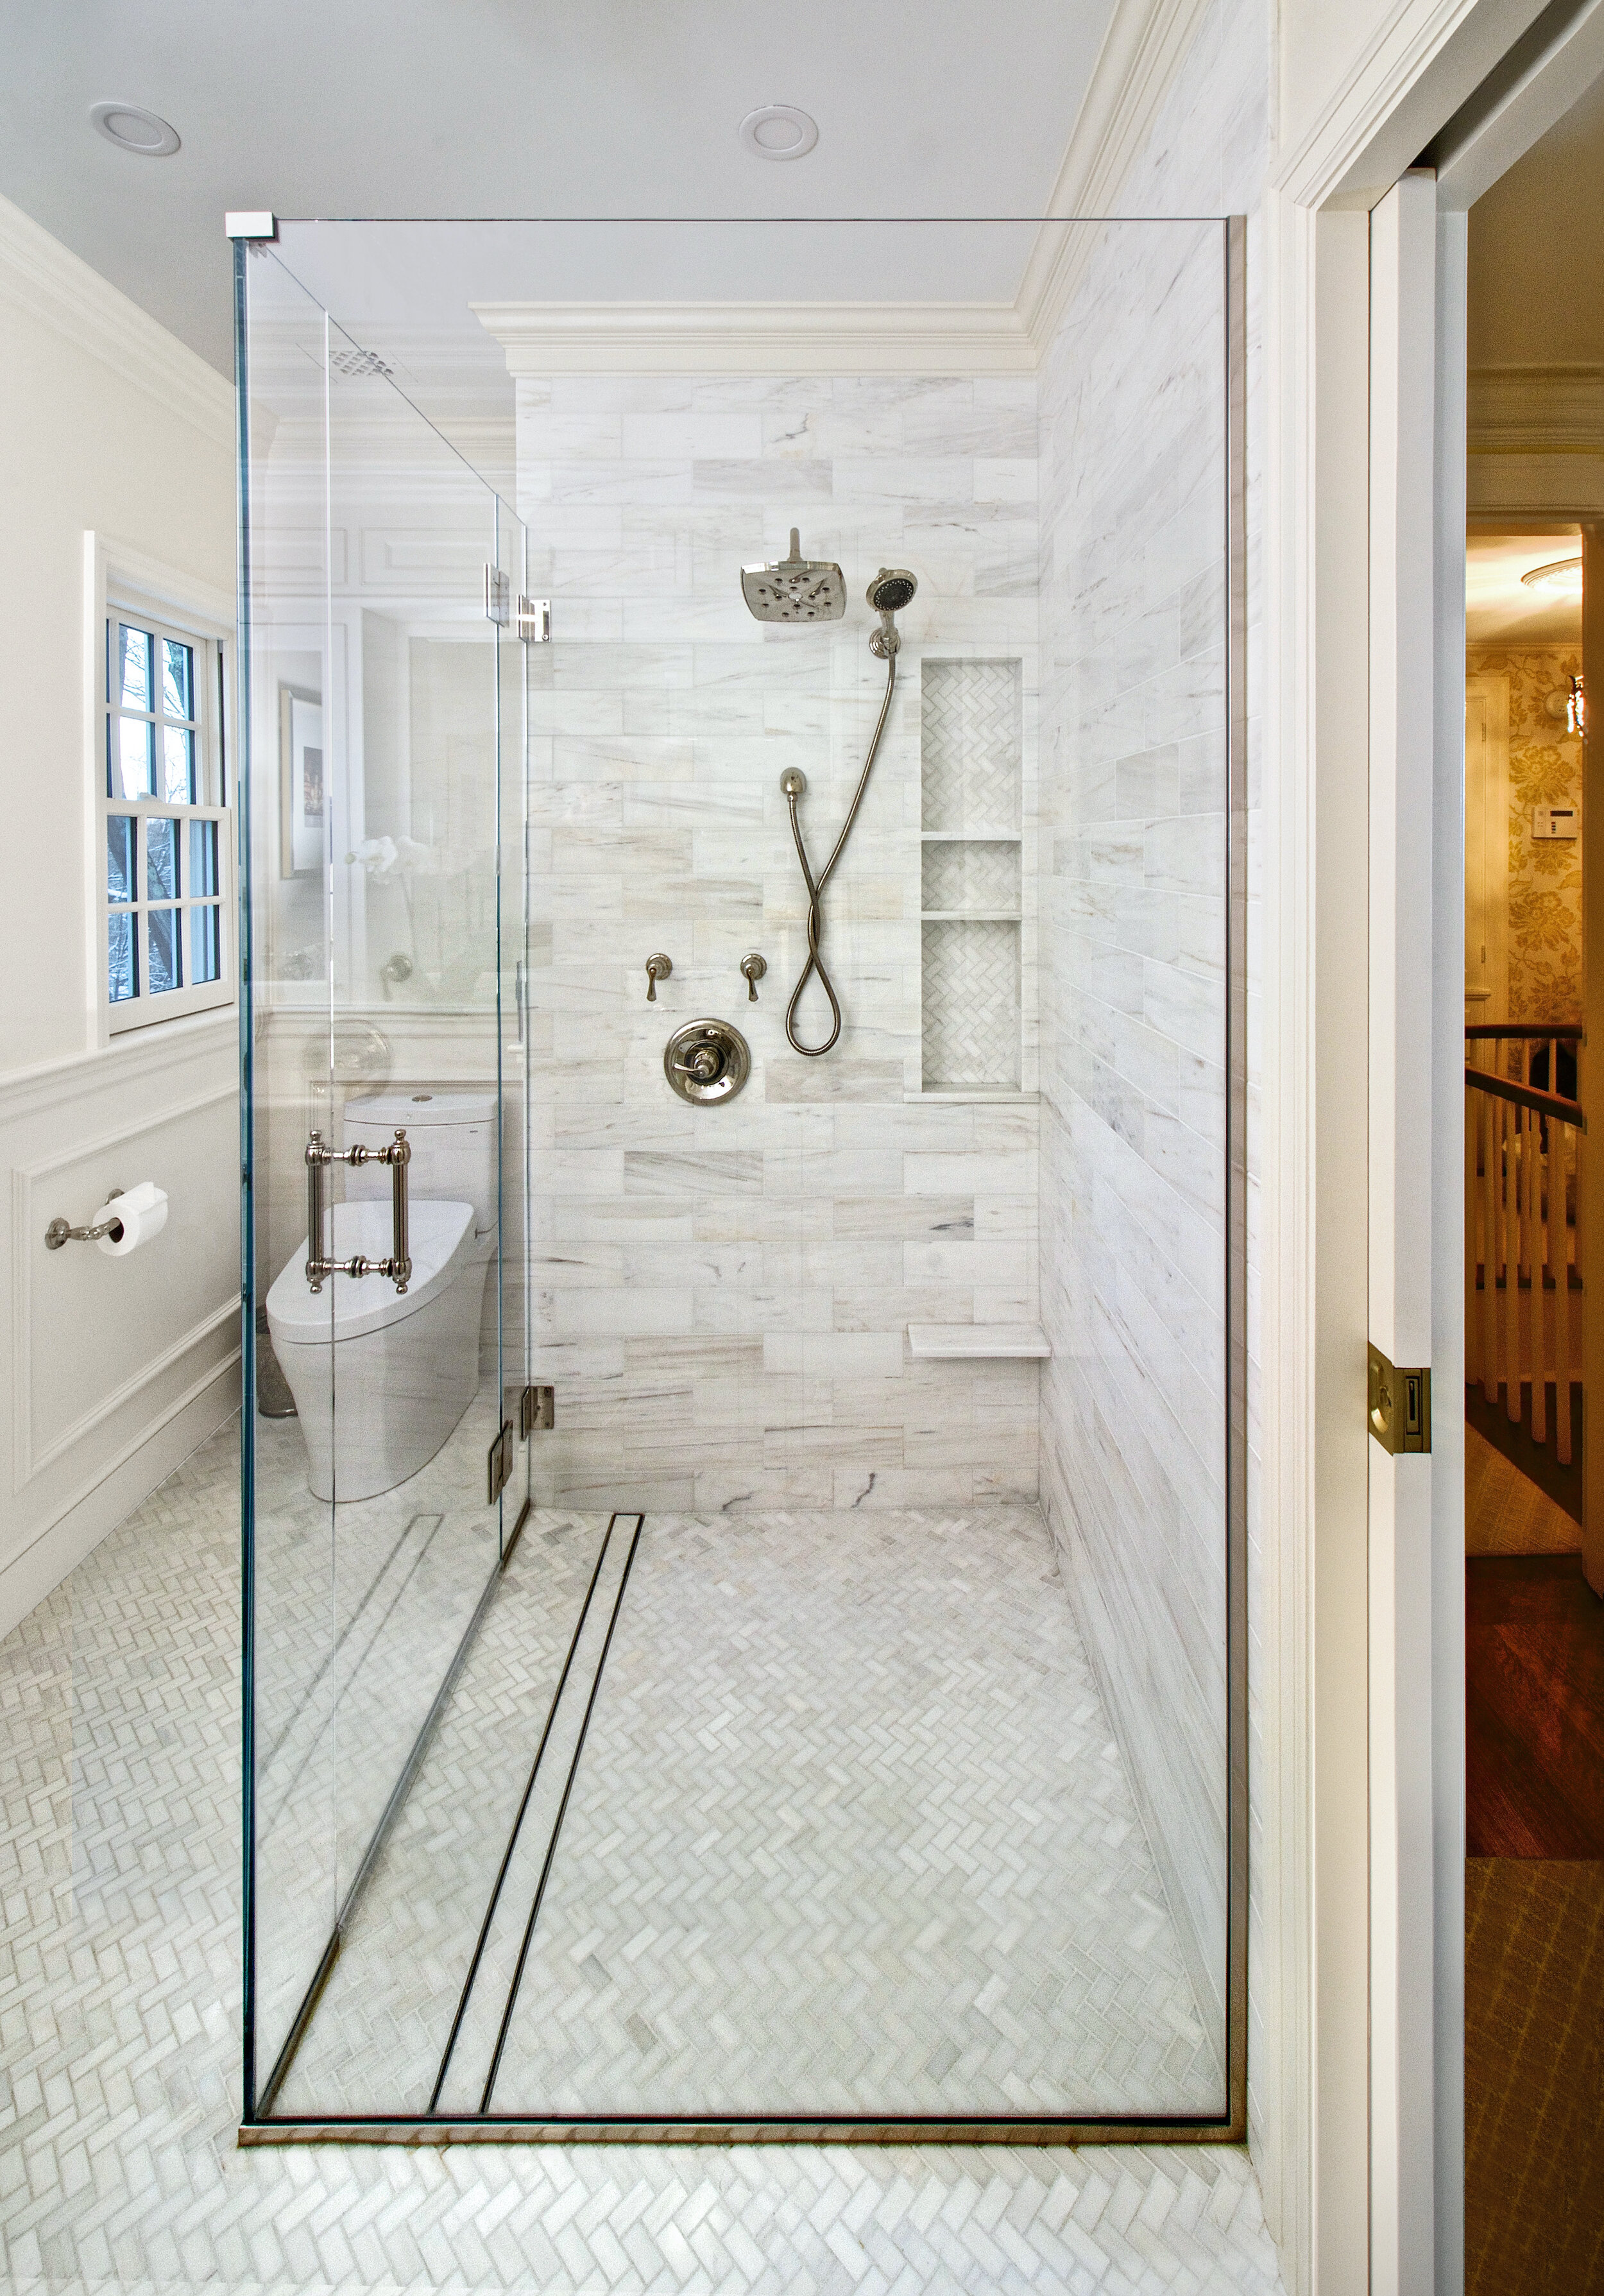 Brookline+Master+Bath+Walk-in+Shower+Bidet+Toilet+KitchenVisions.jpg